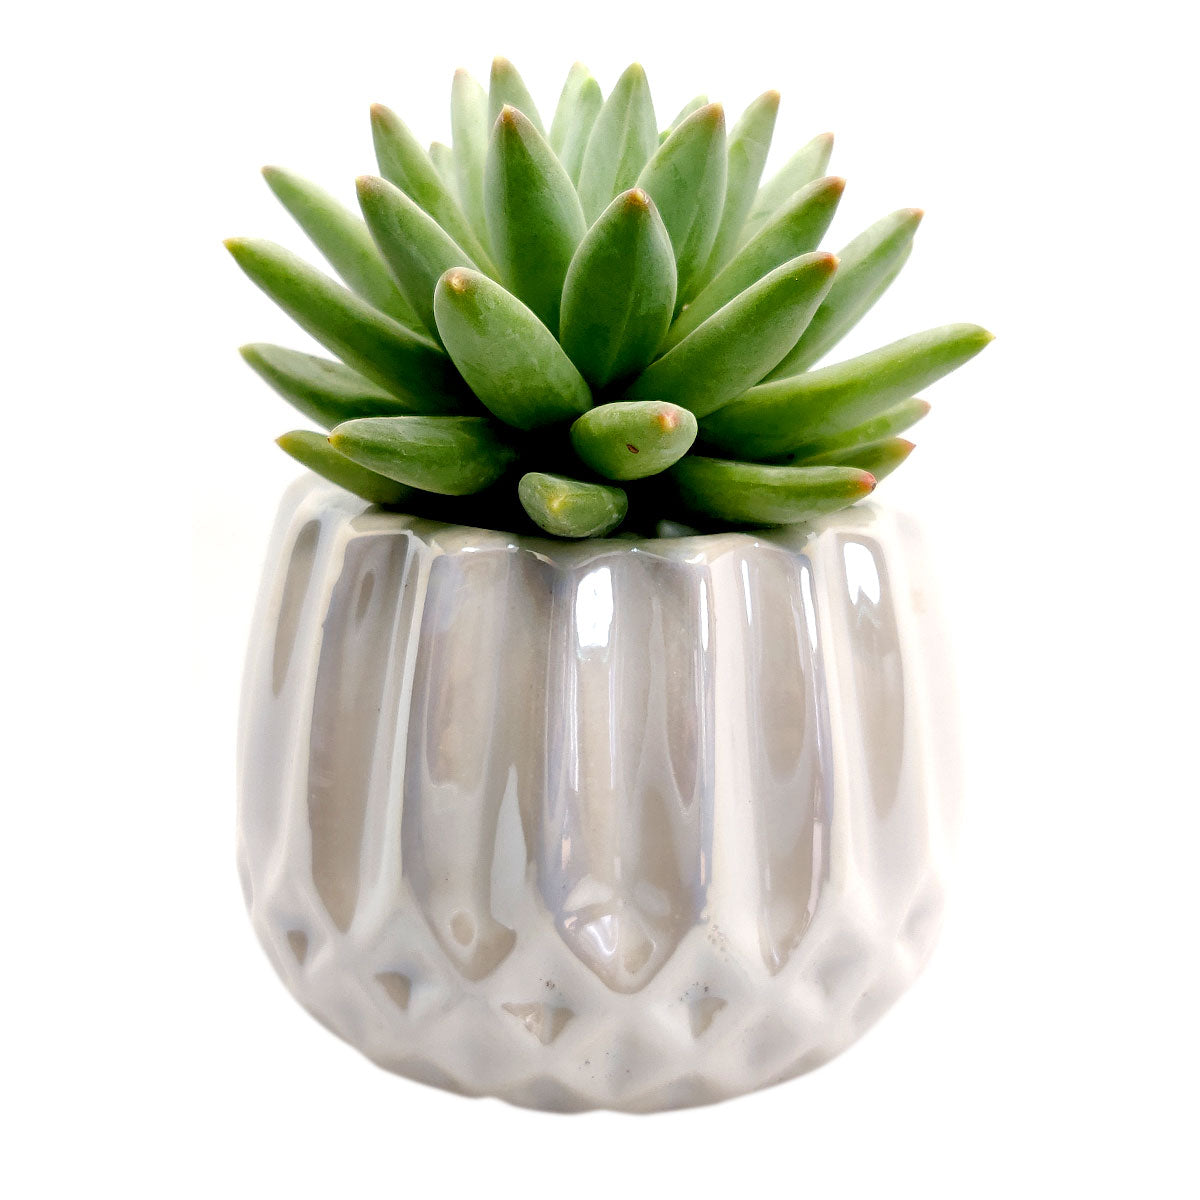 Pot for sale, Mini pot for succulent, Succulent pot decor ideas, White Modern Geometric Pot, Flower pot for sale, glass pots for planting, succulent gift for holiday